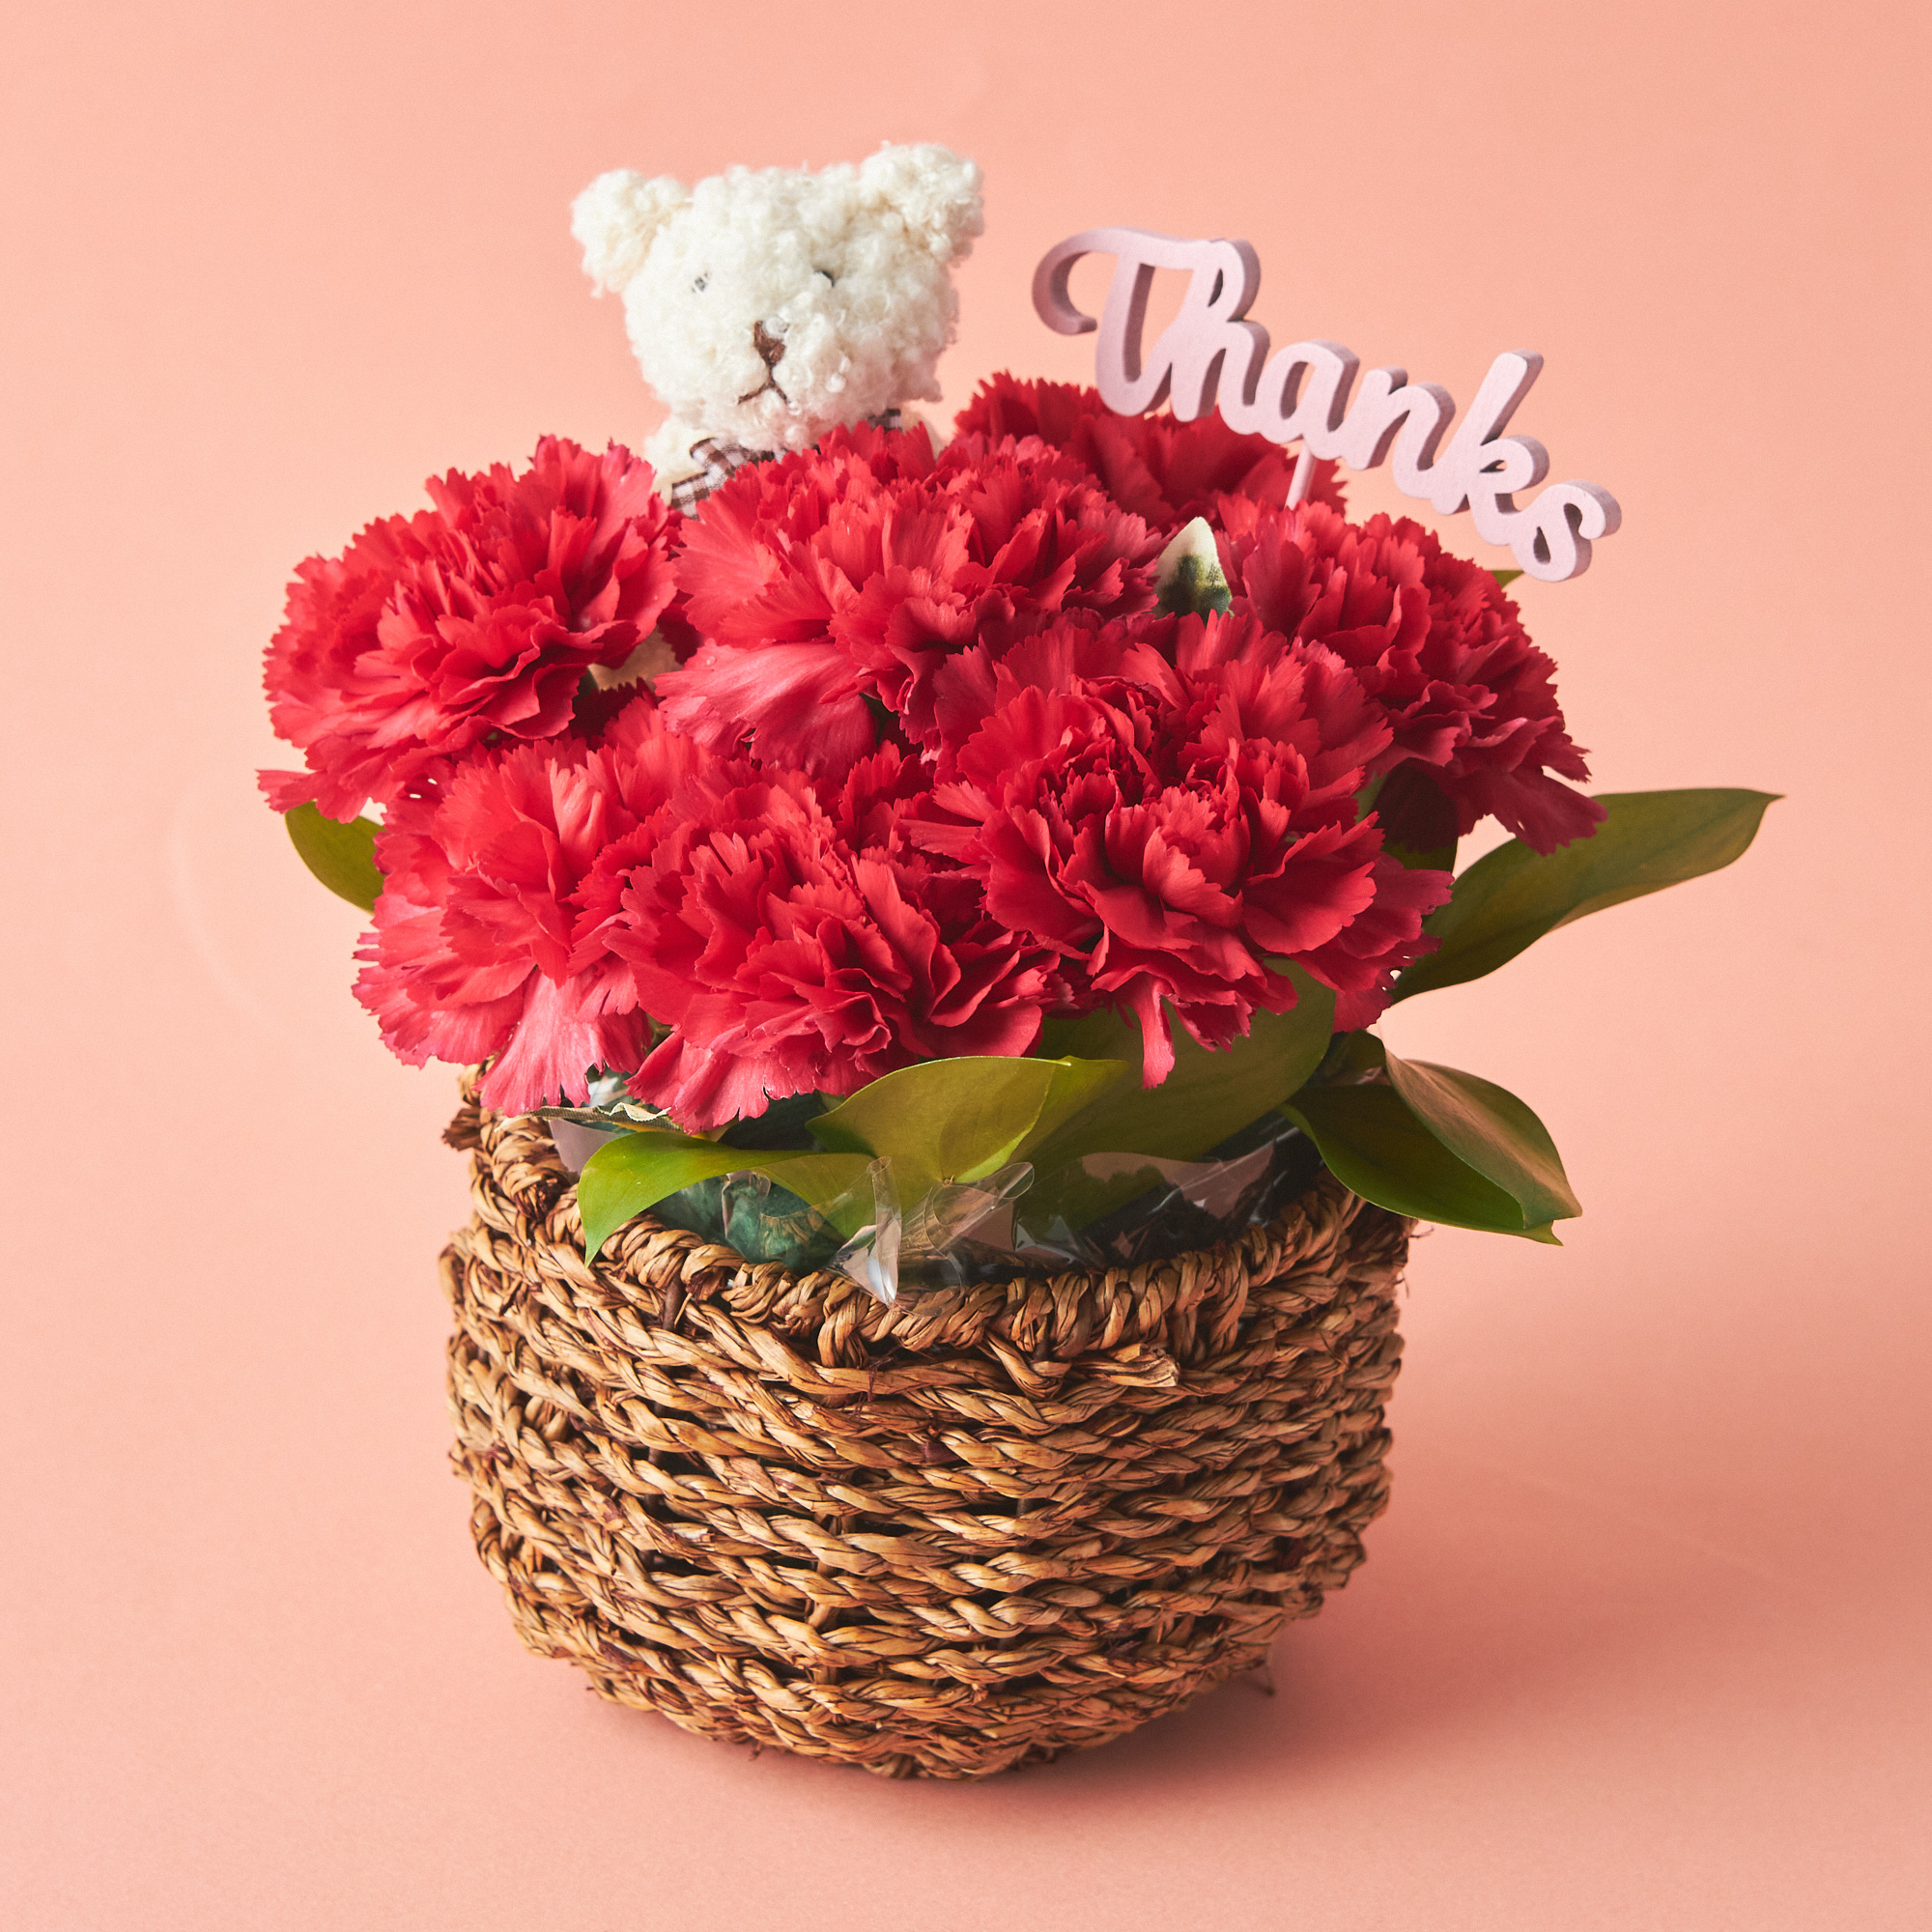 【送料無料】選べるケアグッズと可愛い生花カーネーション アレンジメントのセット【母の日に贈る】